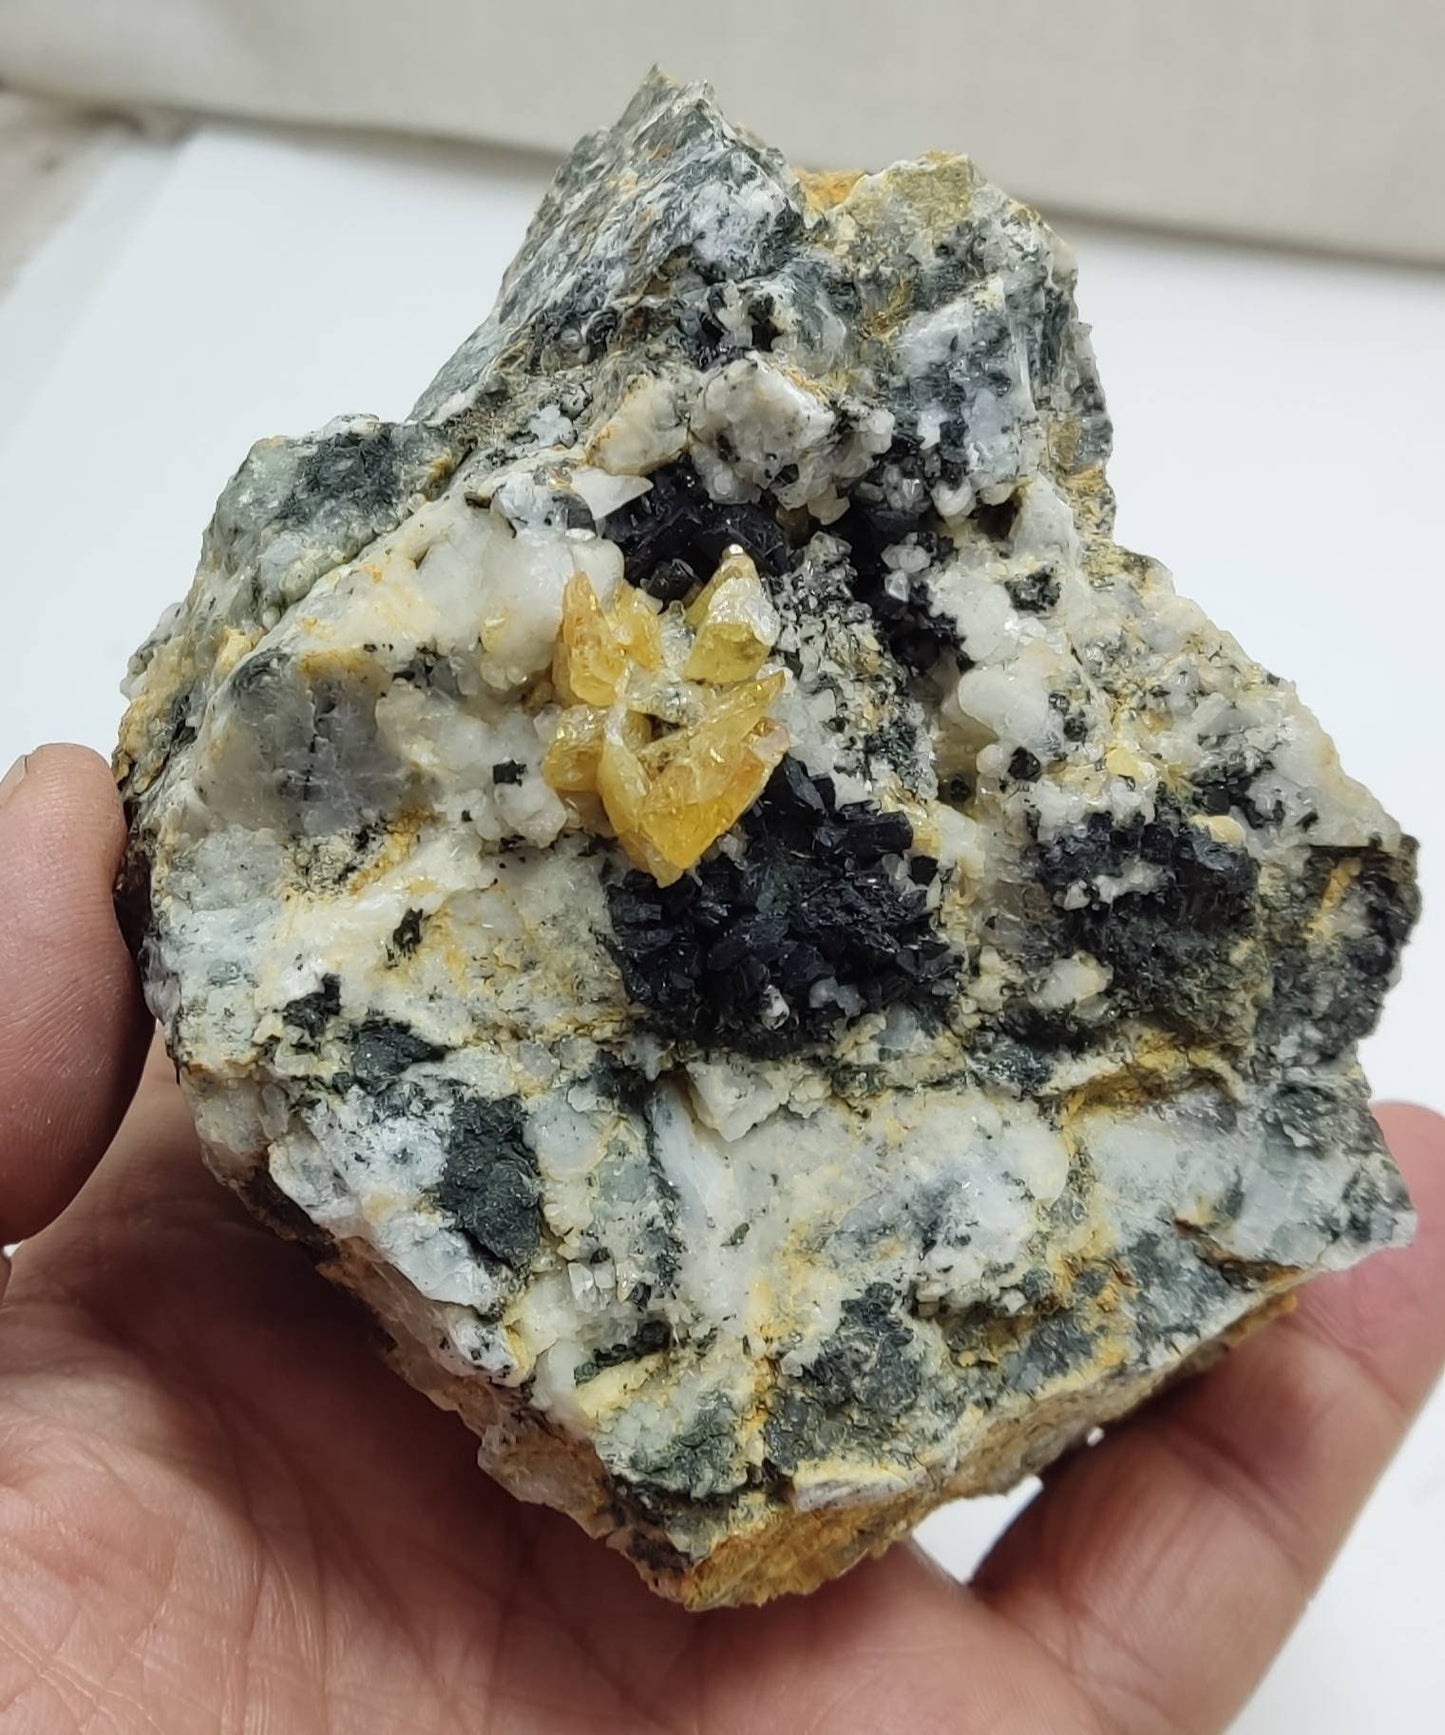 Titanite sphene clusters with actinolite or aegirine on matrix 602 grams